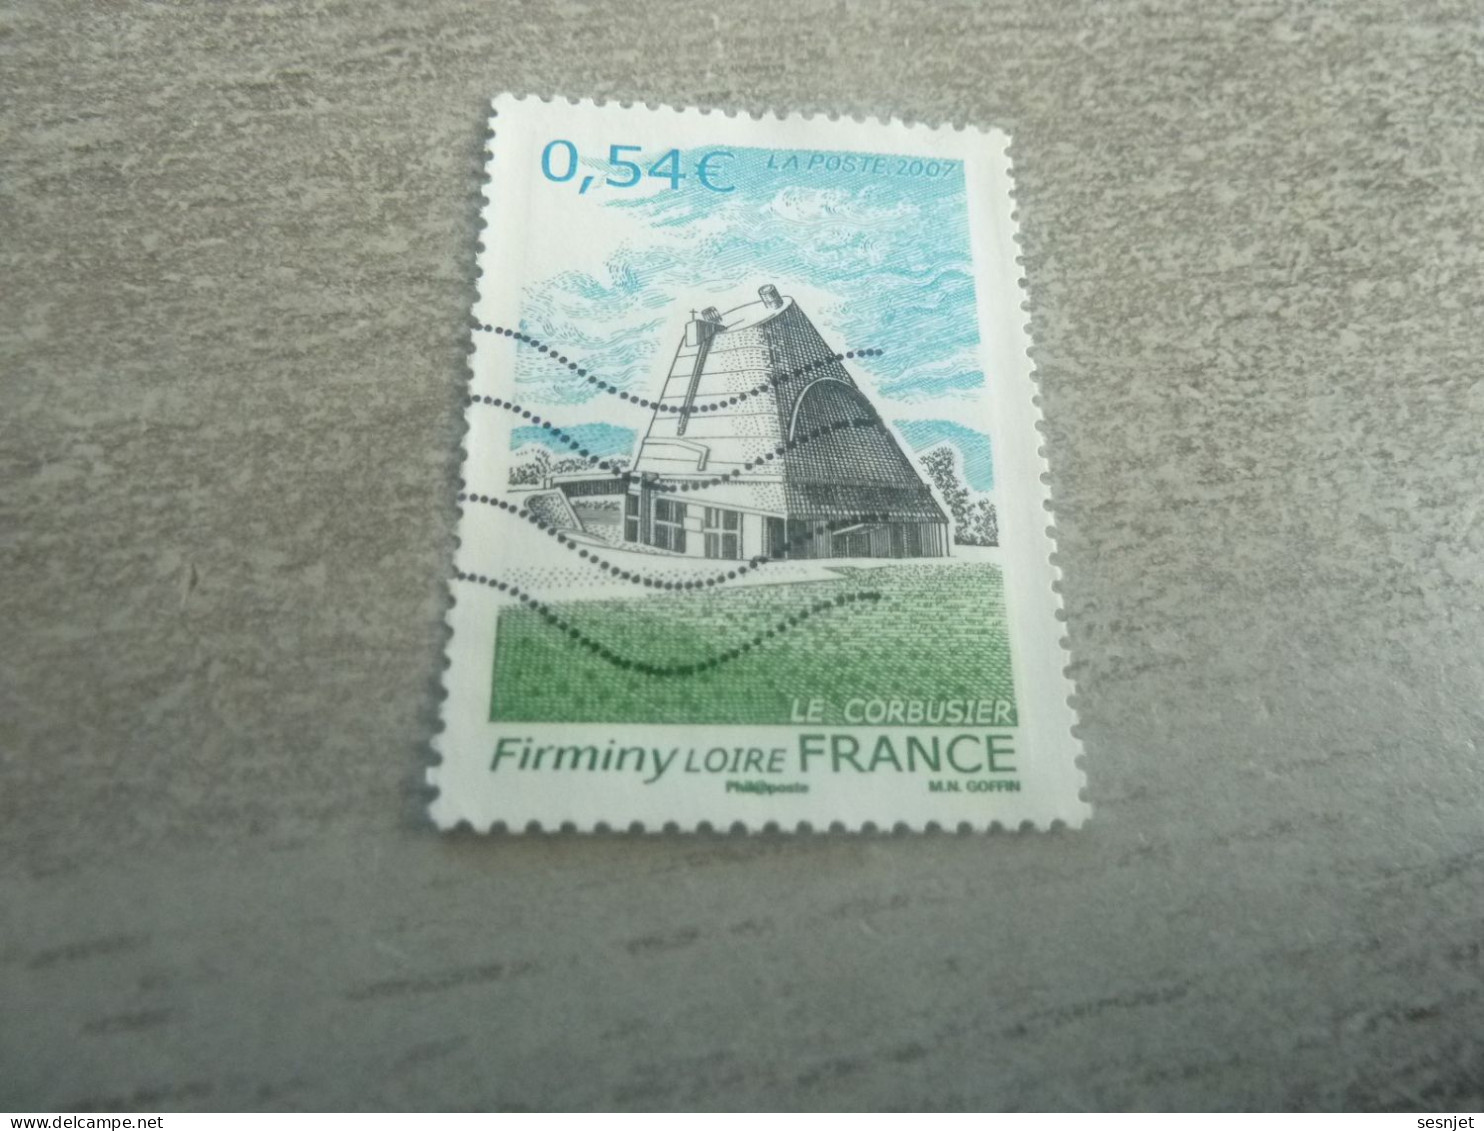 Firminy (Loire) Eglise Saint-Pierre Le Corbusier (1887-1965) - 0.54 € - Yt 4087 - Multicolore - Oblitéré - Année 2007 - - Oblitérés